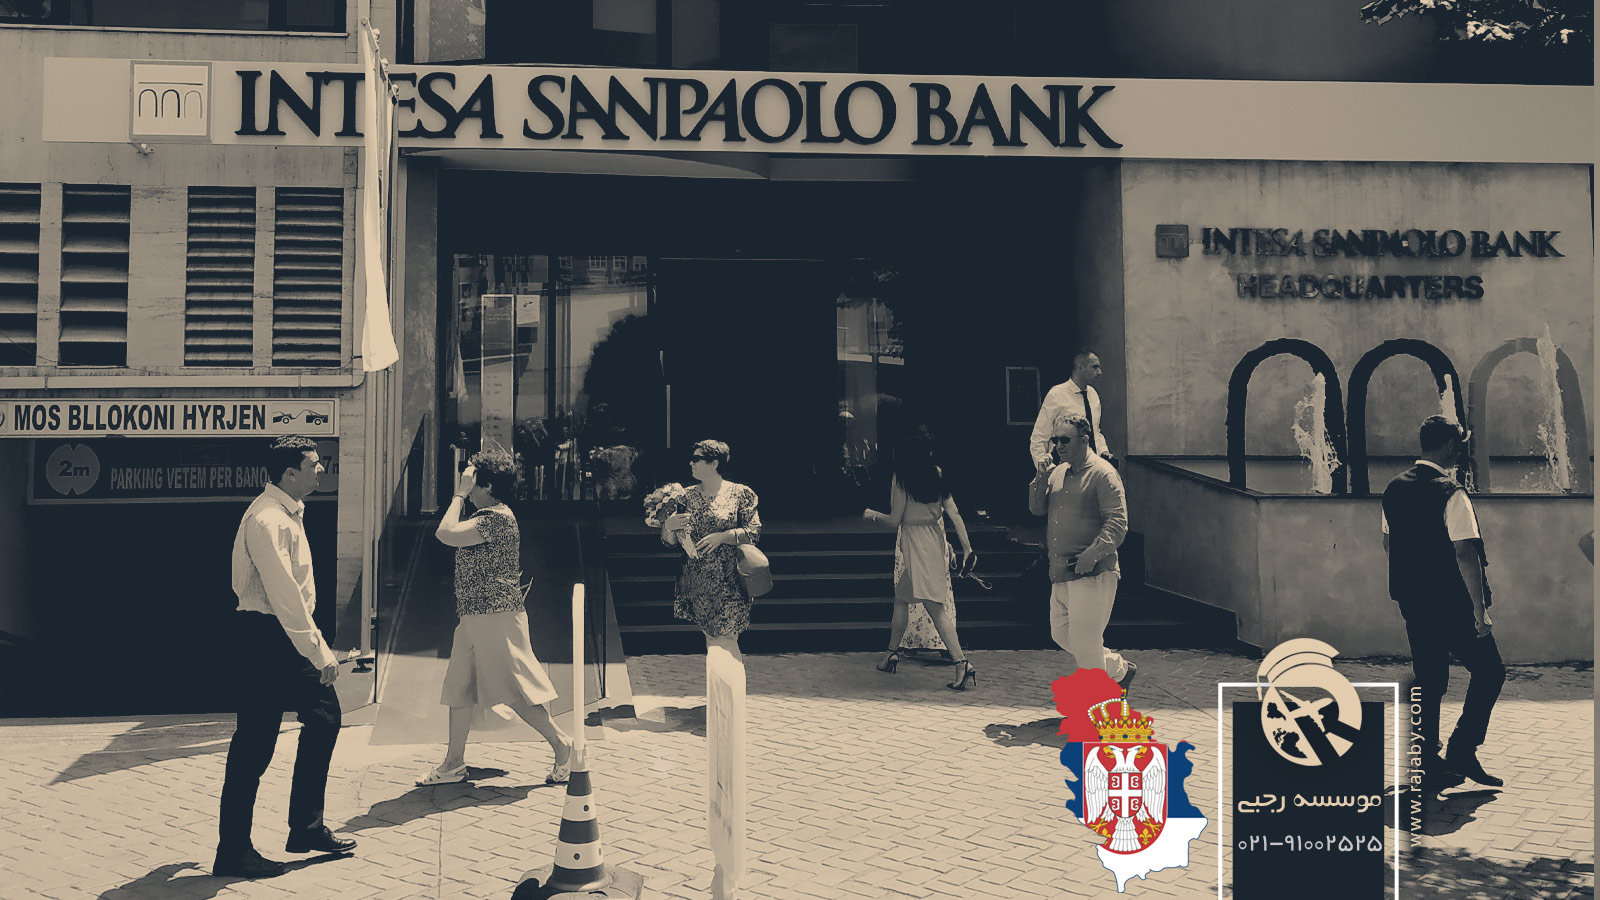 10 شرکت و بانک مهم در صربستان